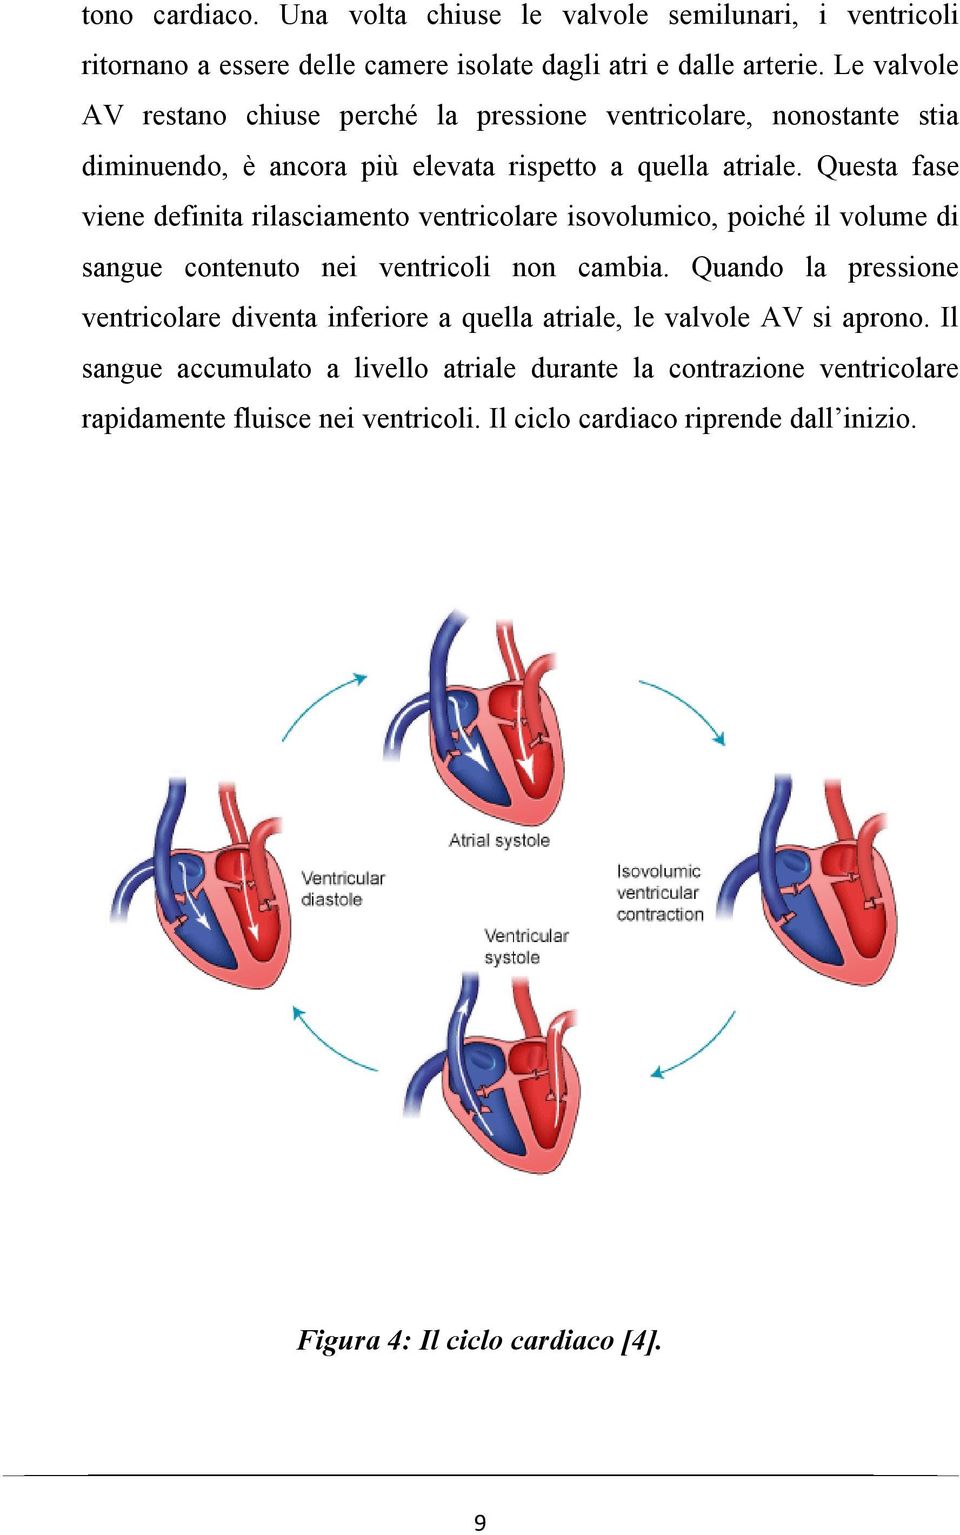 Questa fase viene definita rilasciamento ventricolare isovolumico, poiché il volume di sangue contenuto nei ventricoli non cambia.